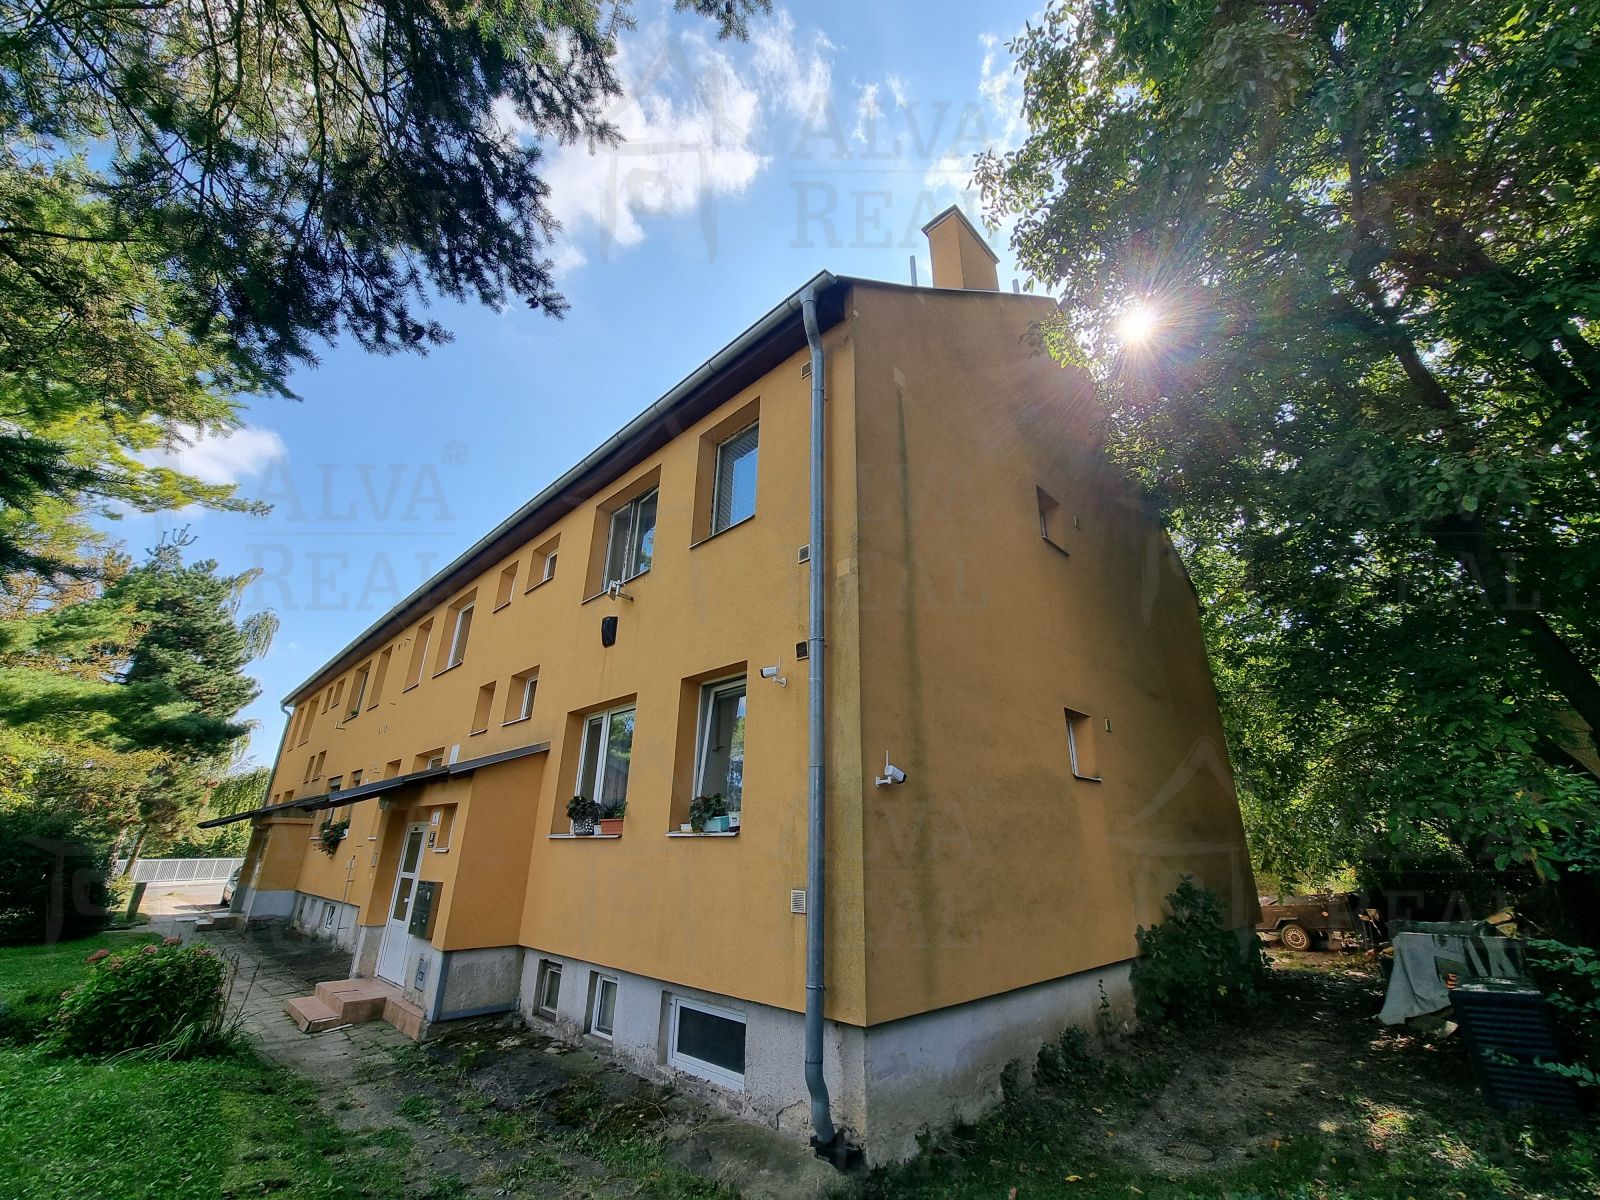 Prodej bytu 1+1 ( 2+1 ) v klidné městské části Brno - Jehnice, ul. Kleštínek, zvýšené přízemí.